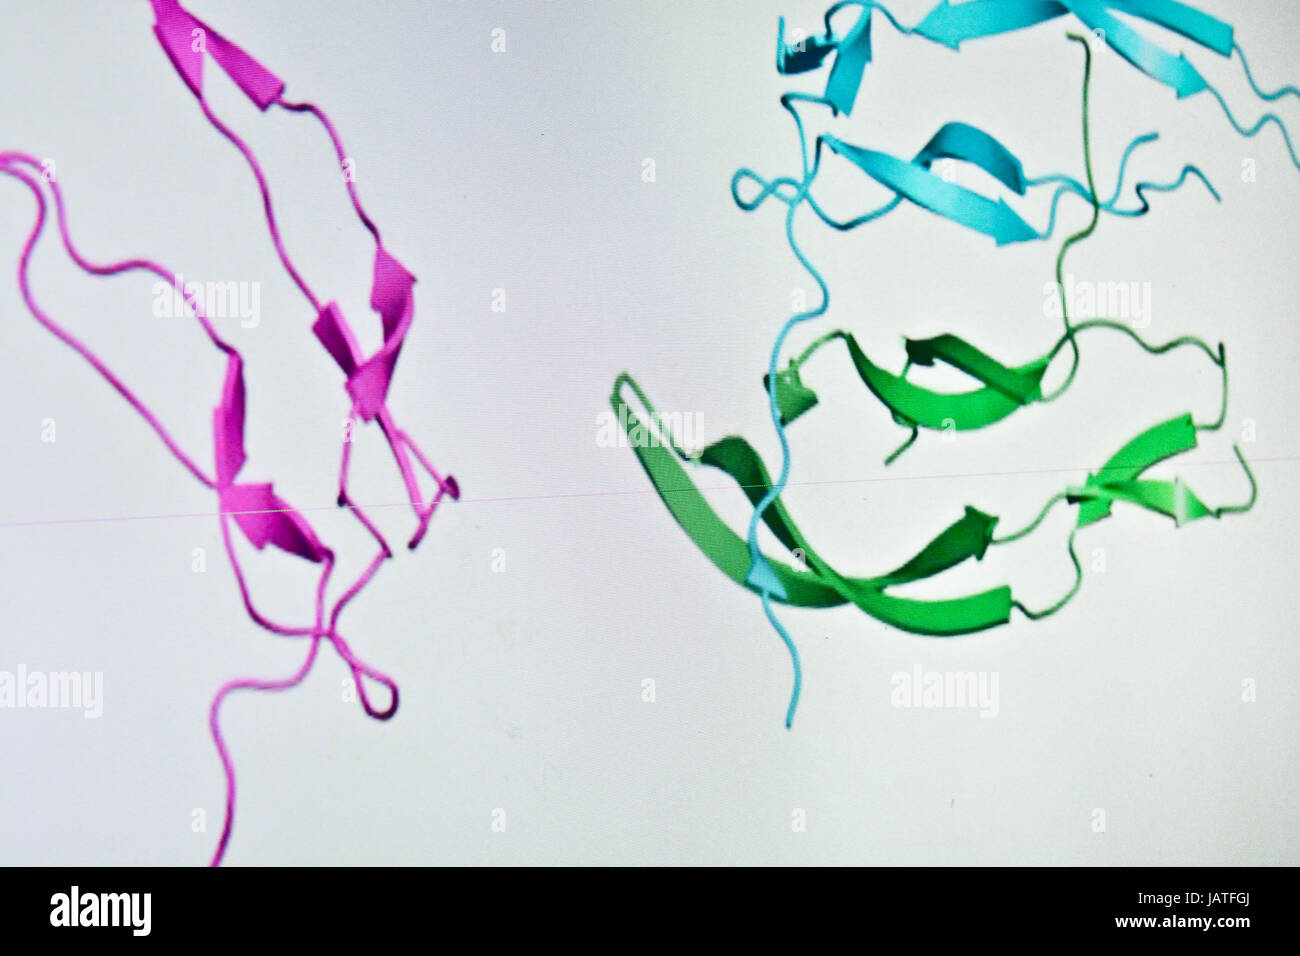 La ricerca nel campo della proteomica. Nuove tecnologie per lo studio di macromolecole biologiche. Foto Stock